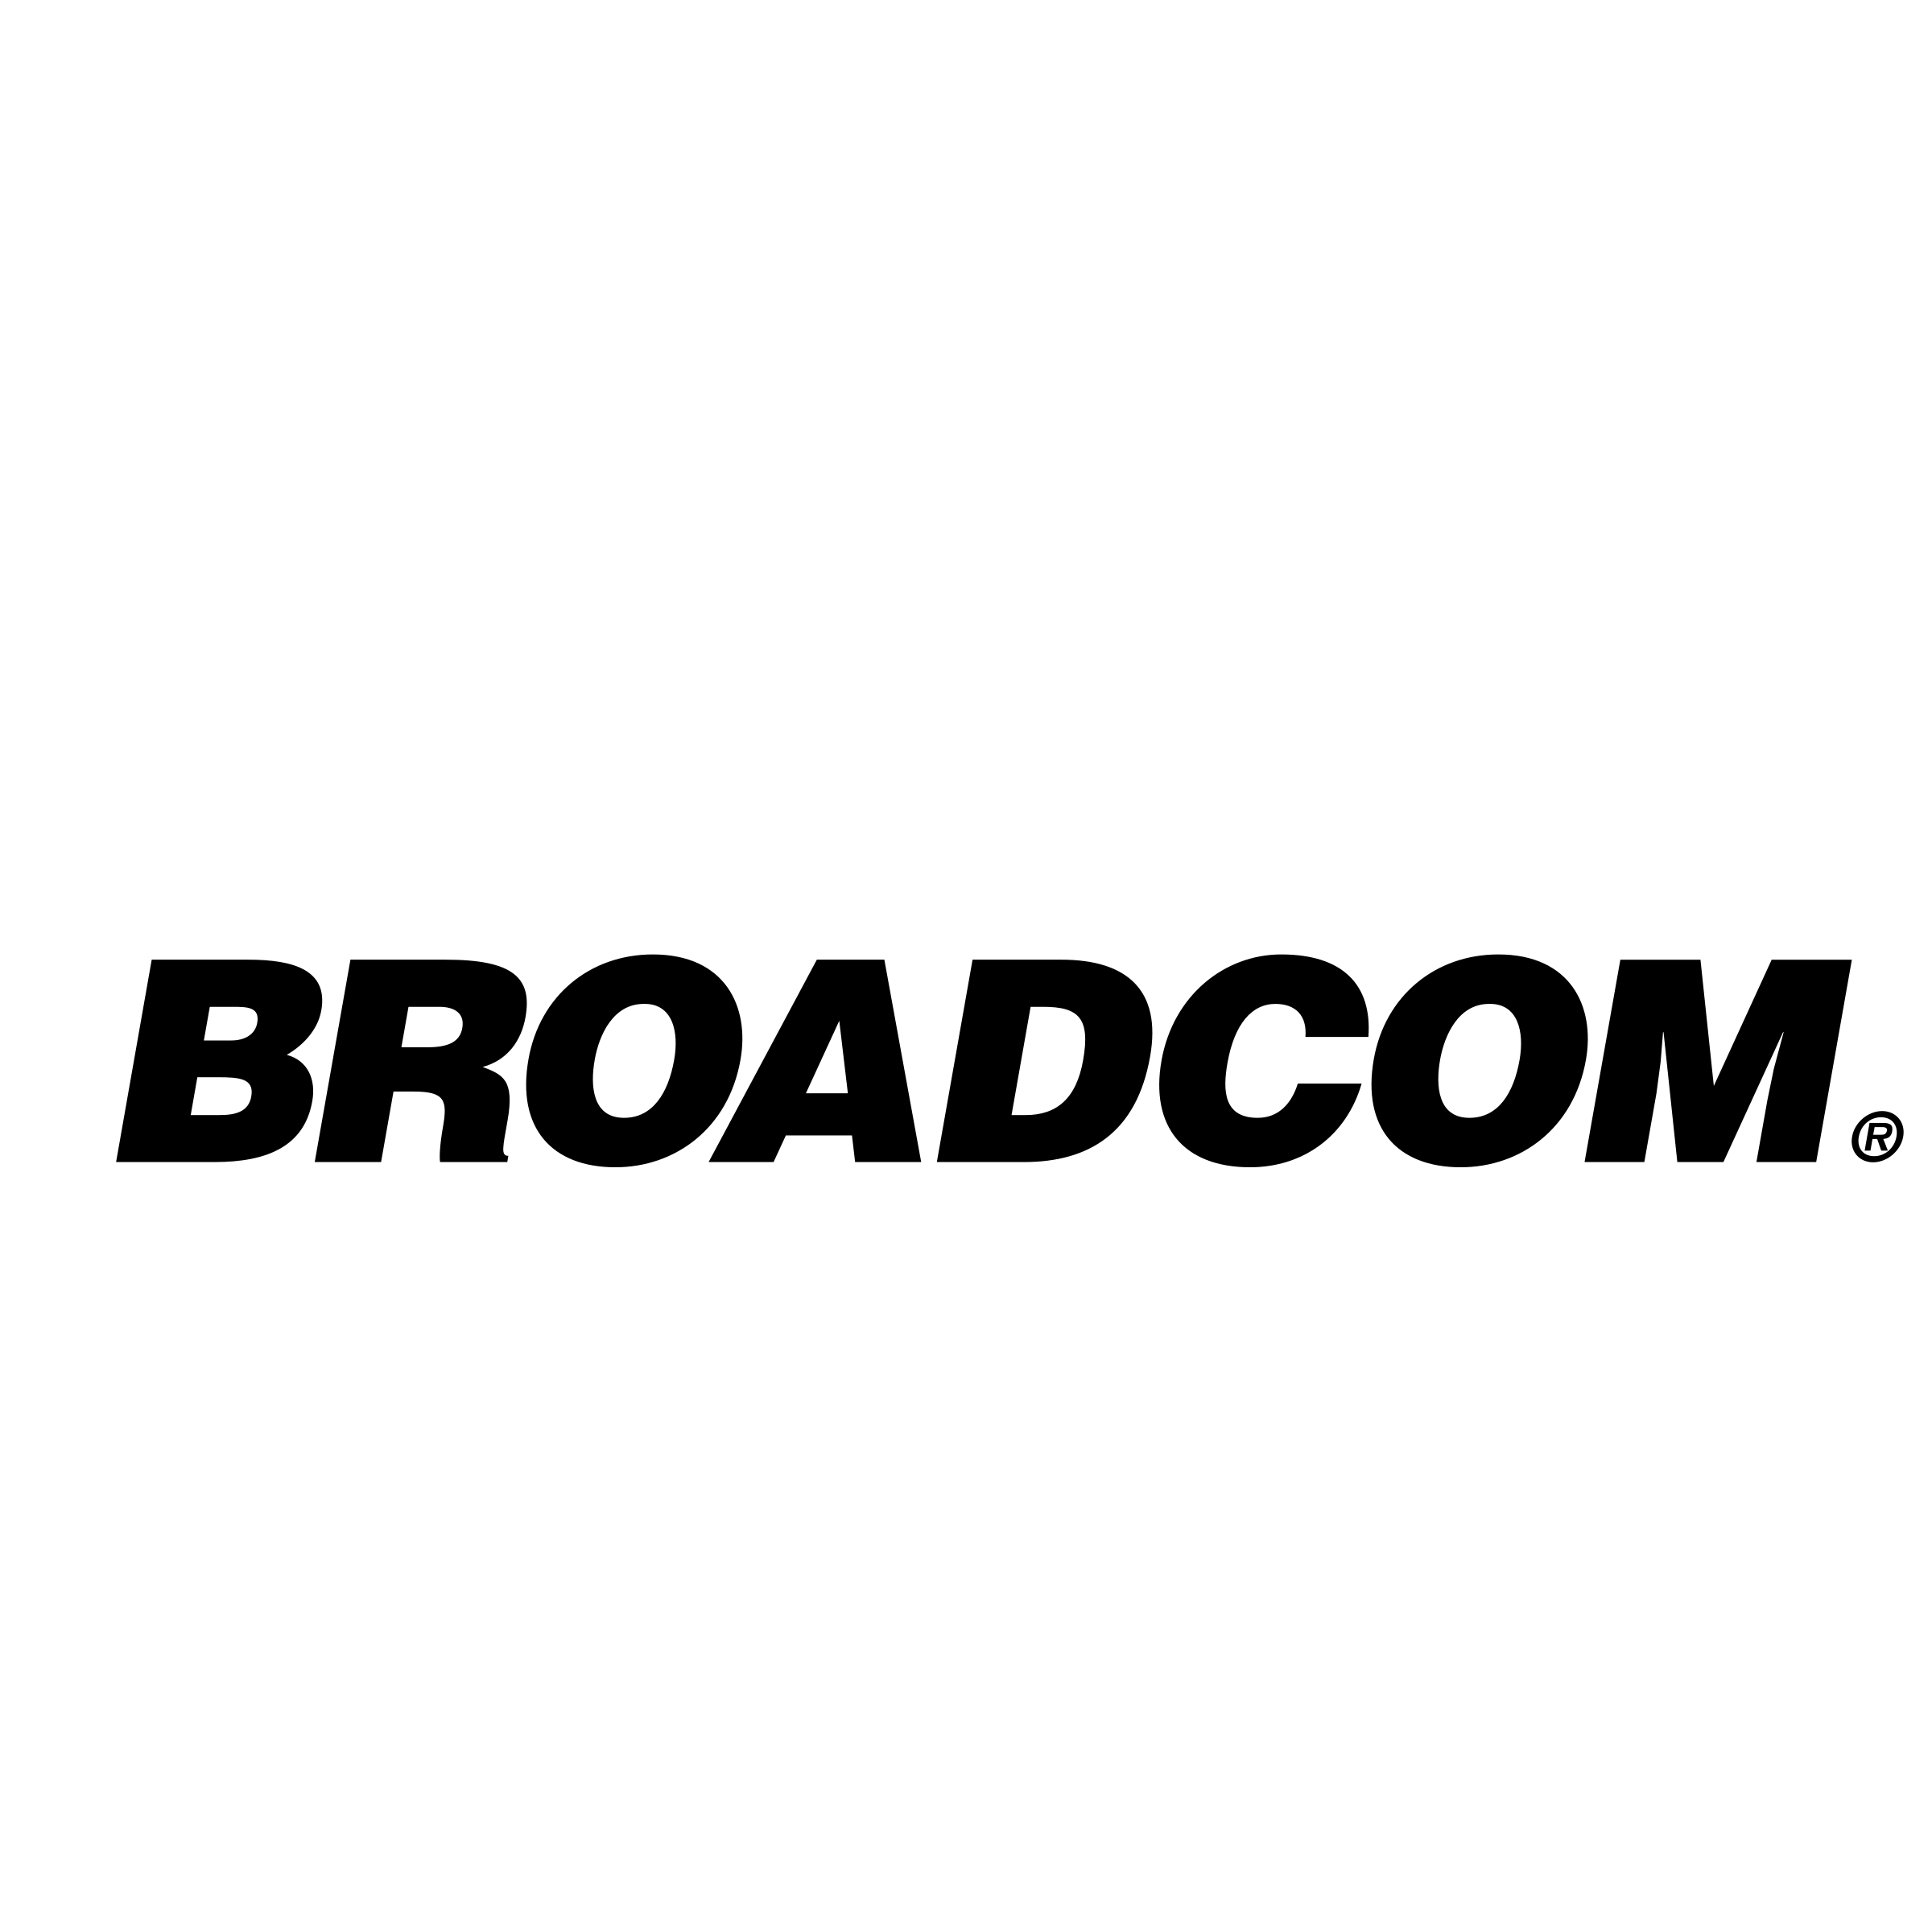 Broadcom Logo - Broadcom Logo PNG Transparent & SVG Vector - Freebie Supply